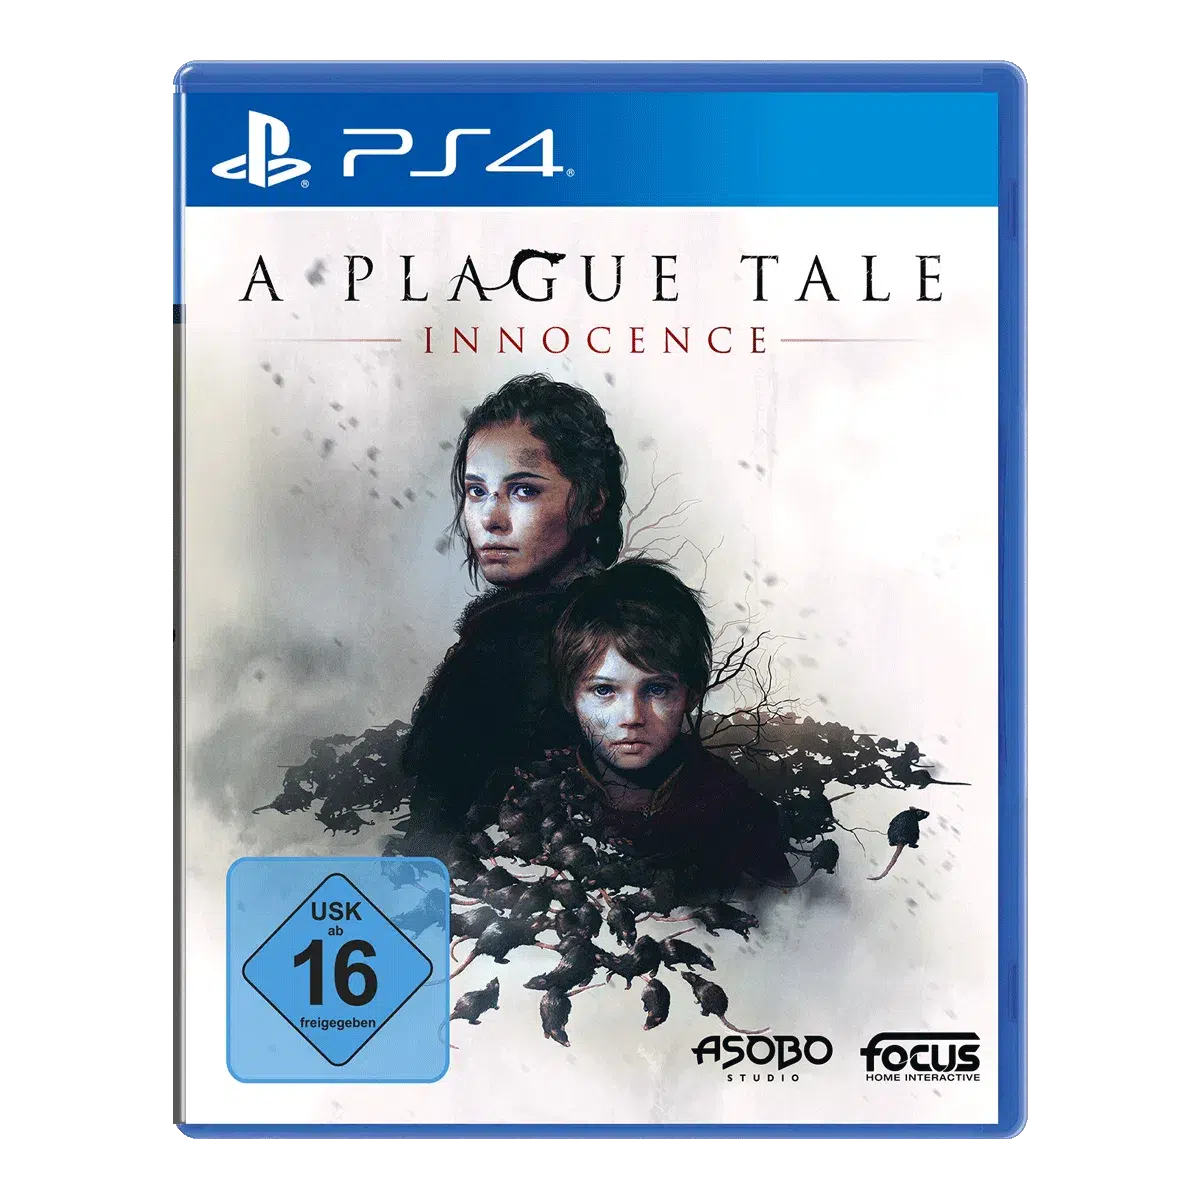 A Plague Tale: Innocence - PS4